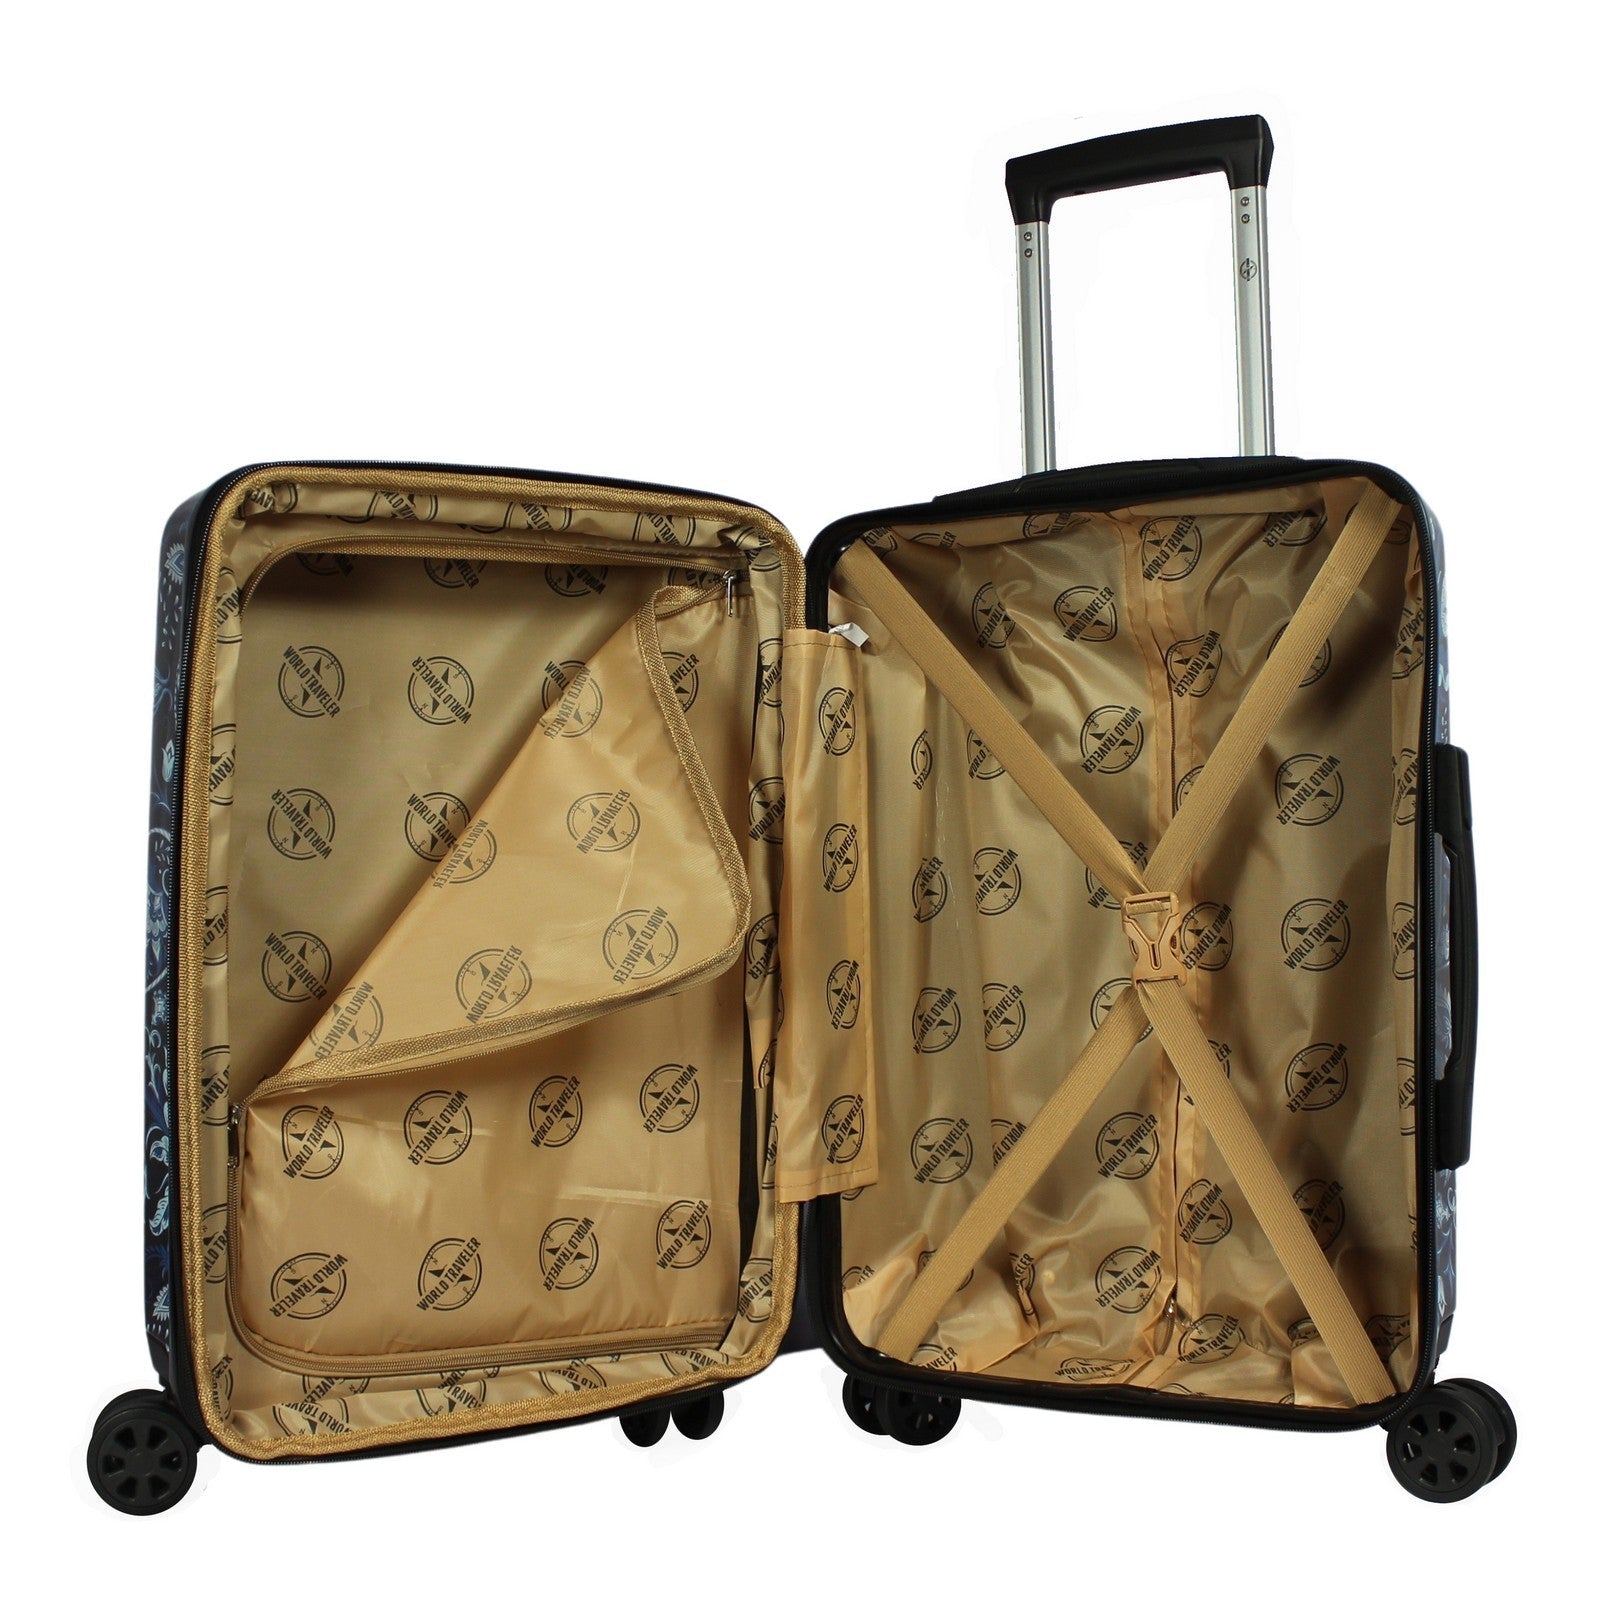 World Traveler Paisley 2-Piece Hardside Carry-On Spinner Luggage Set